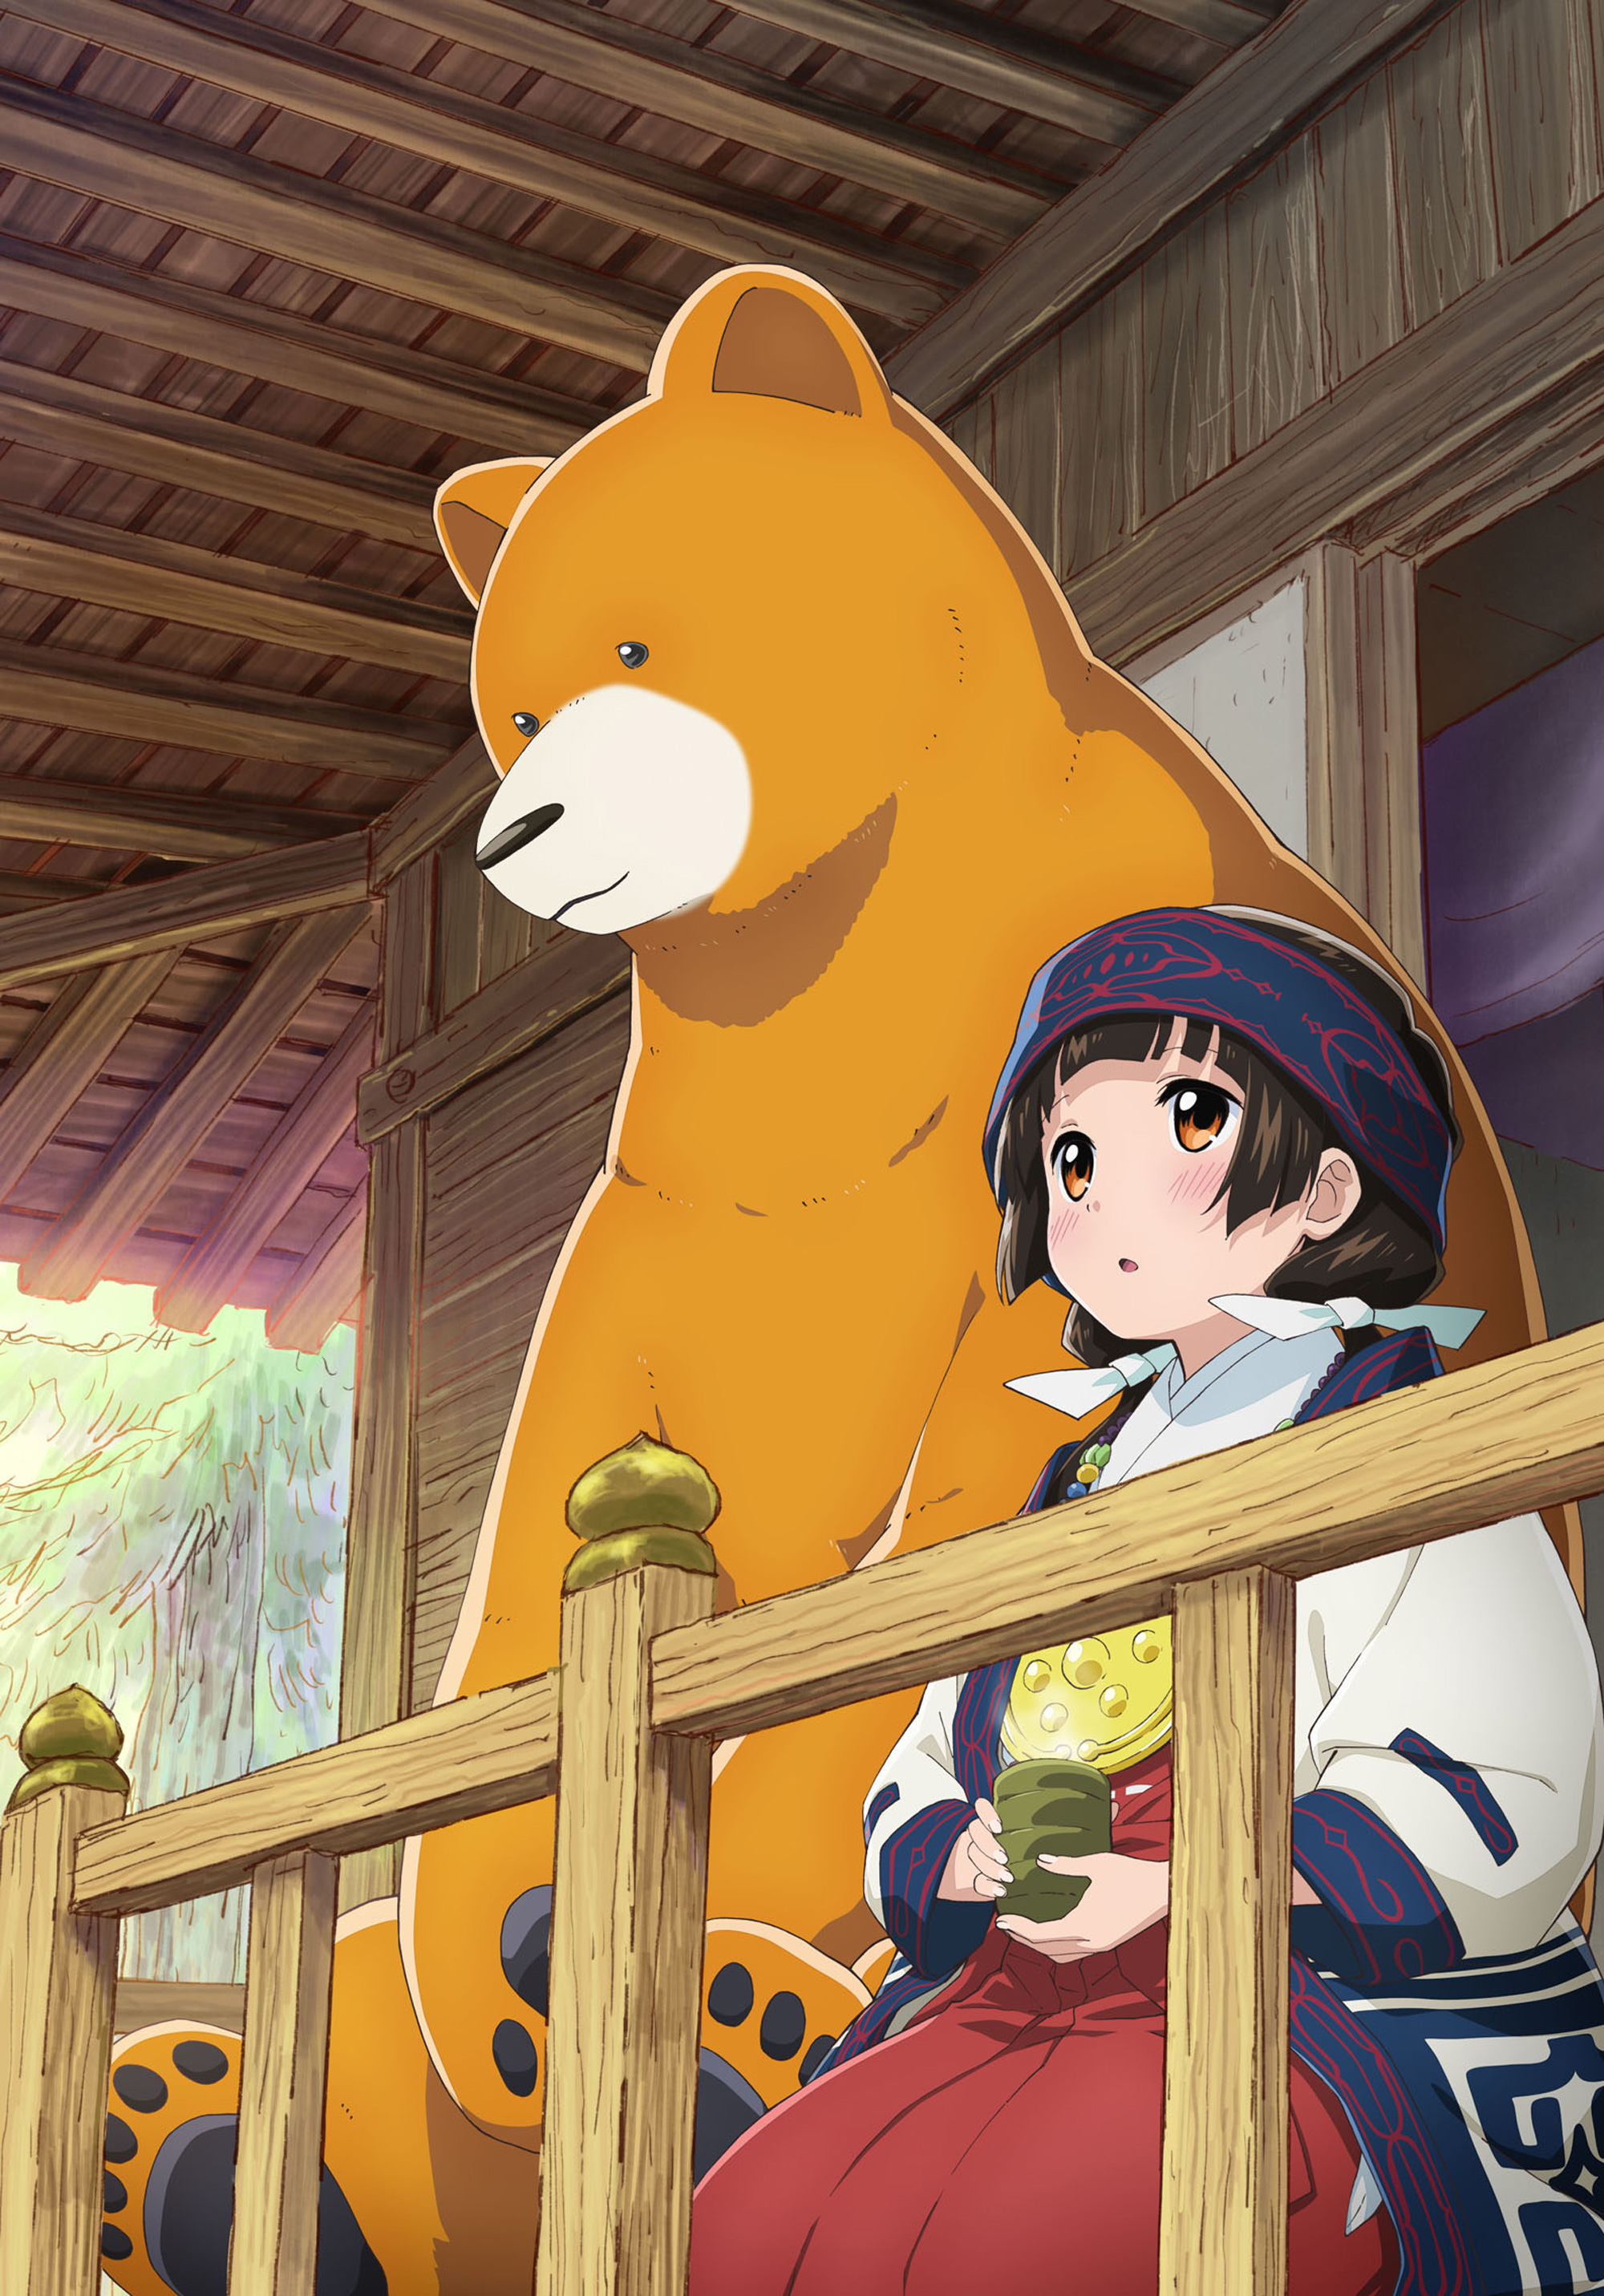 anime style girl with teddy bear ilustración de Stock | Adobe Stock-demhanvico.com.vn